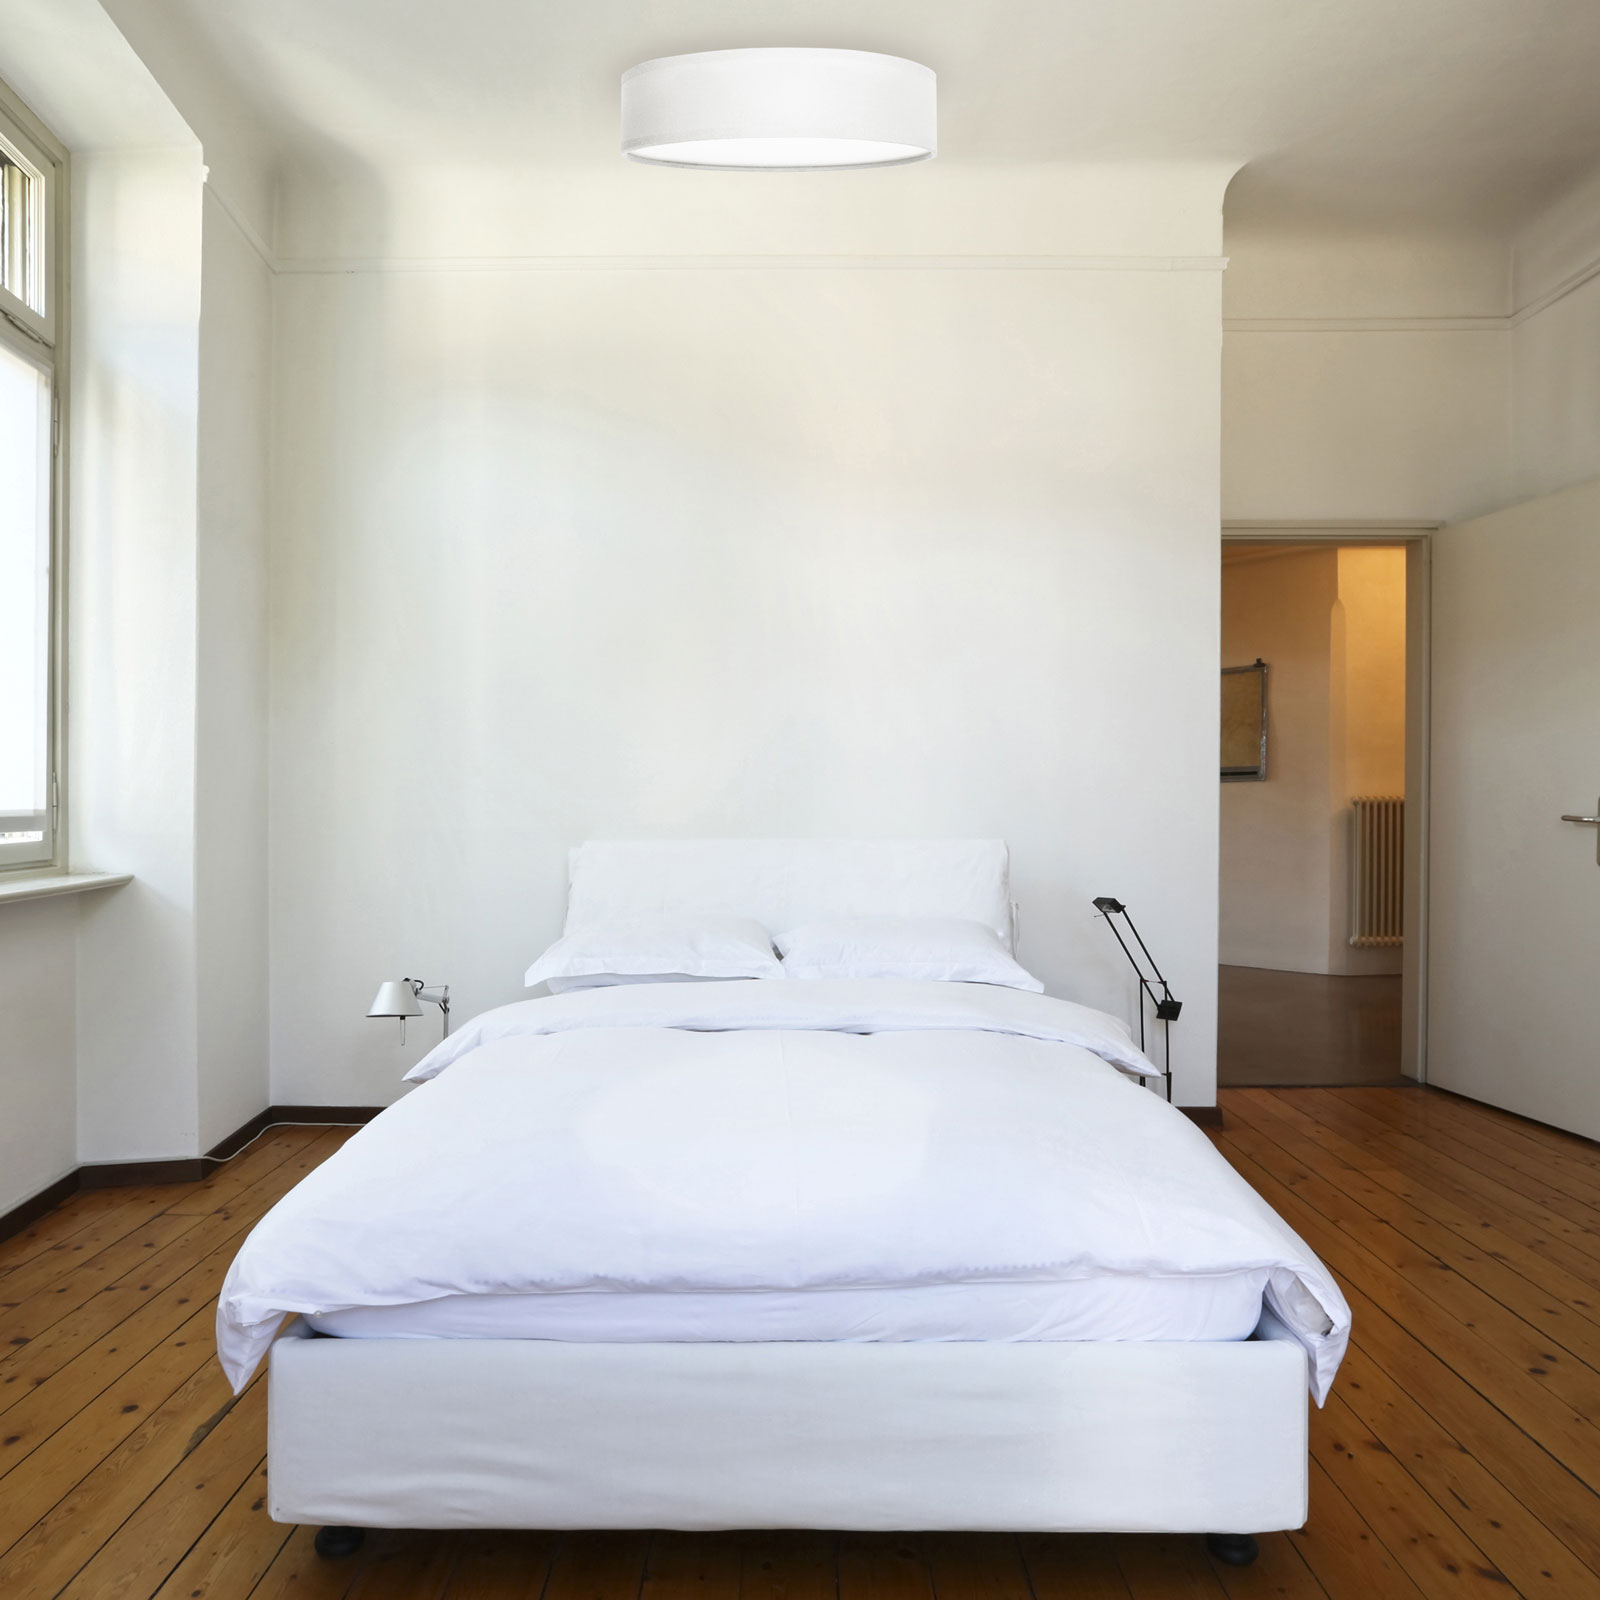 Lámpara de techo Ceiling Dream, tela blanca 40 cm